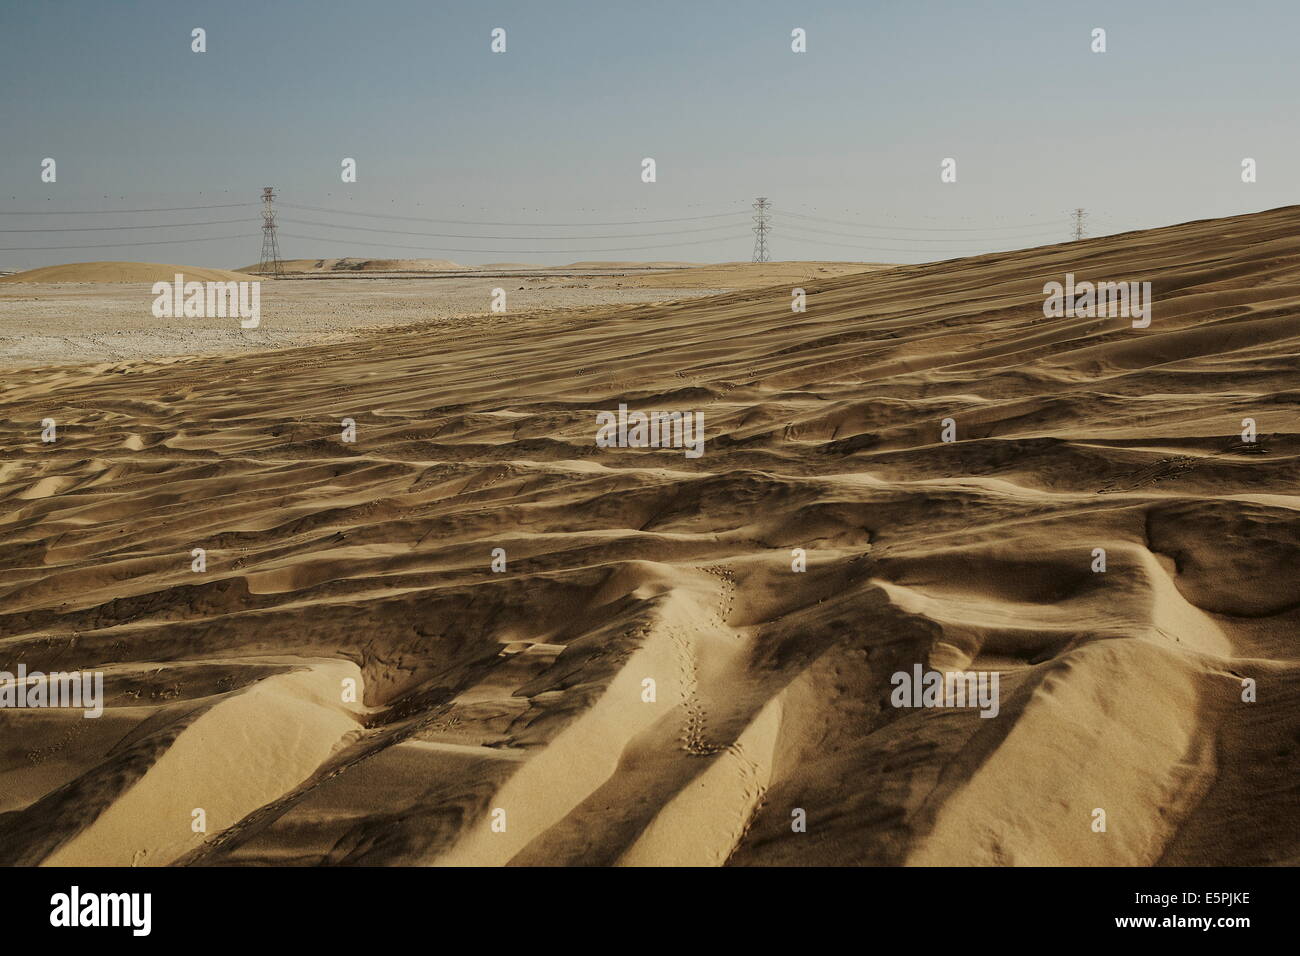 Le dune di sabbia e l'elettricità tralicci dominano il paesaggio del deserto del Qatar, Medio Oriente Foto Stock